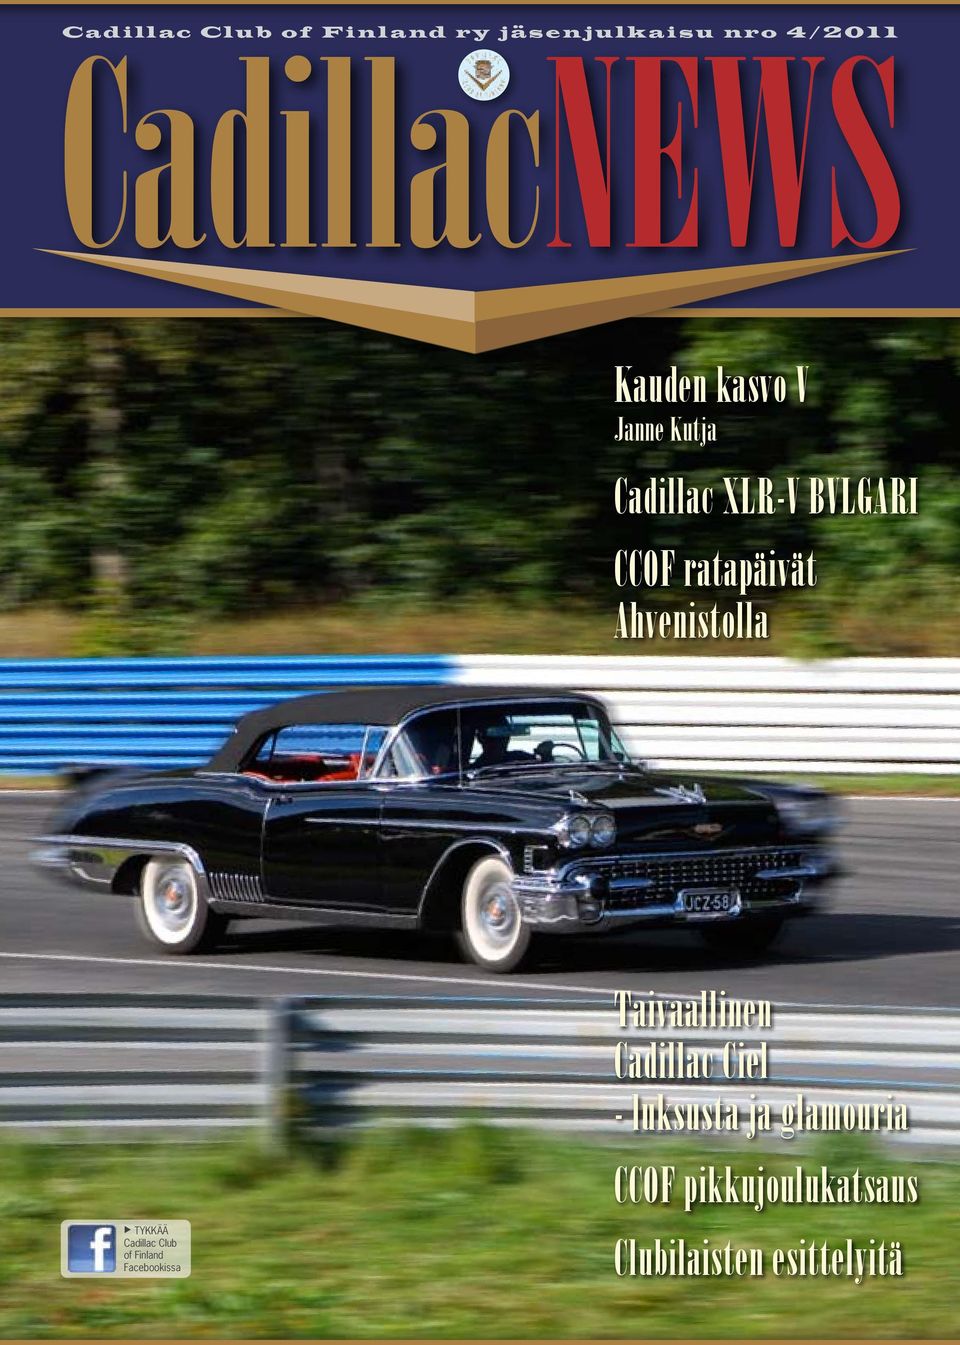 u TYKKÄÄ Cadillac Club of Finland Facebookissa Taivaallinen Cadillac